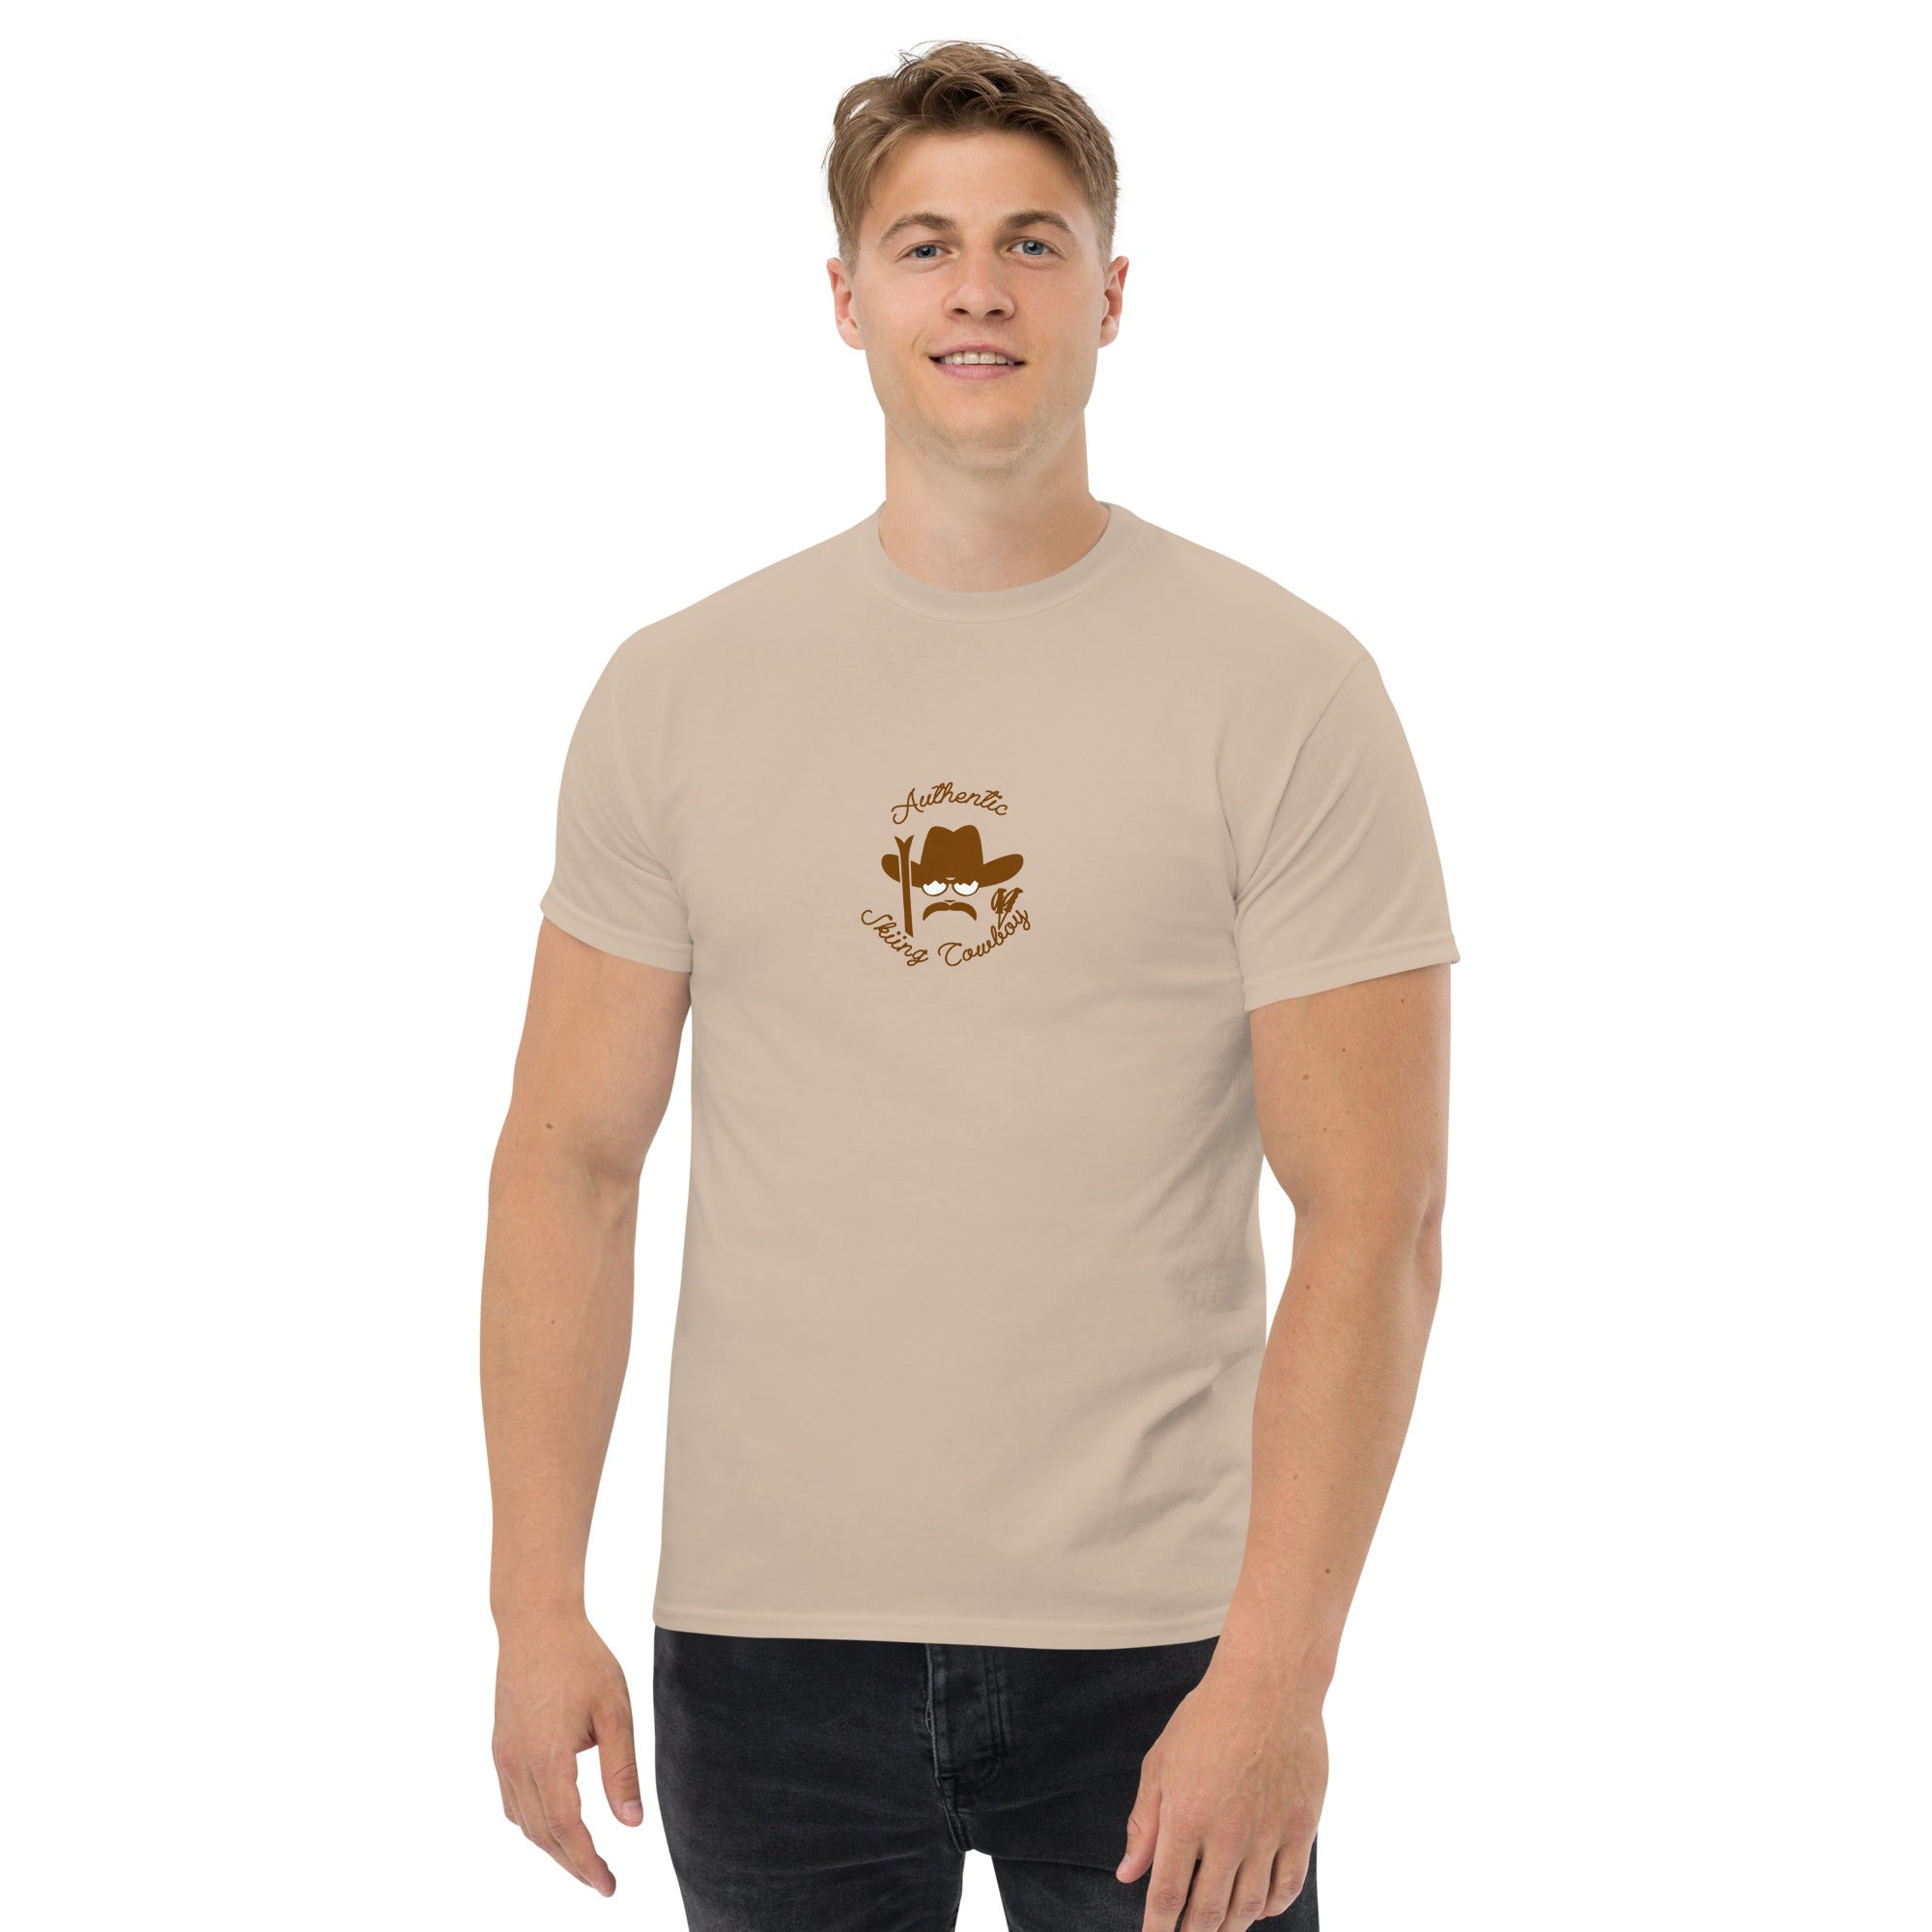 T-shirt classique homme Authentic Skiing Cowboy Brun sur couleurs claires